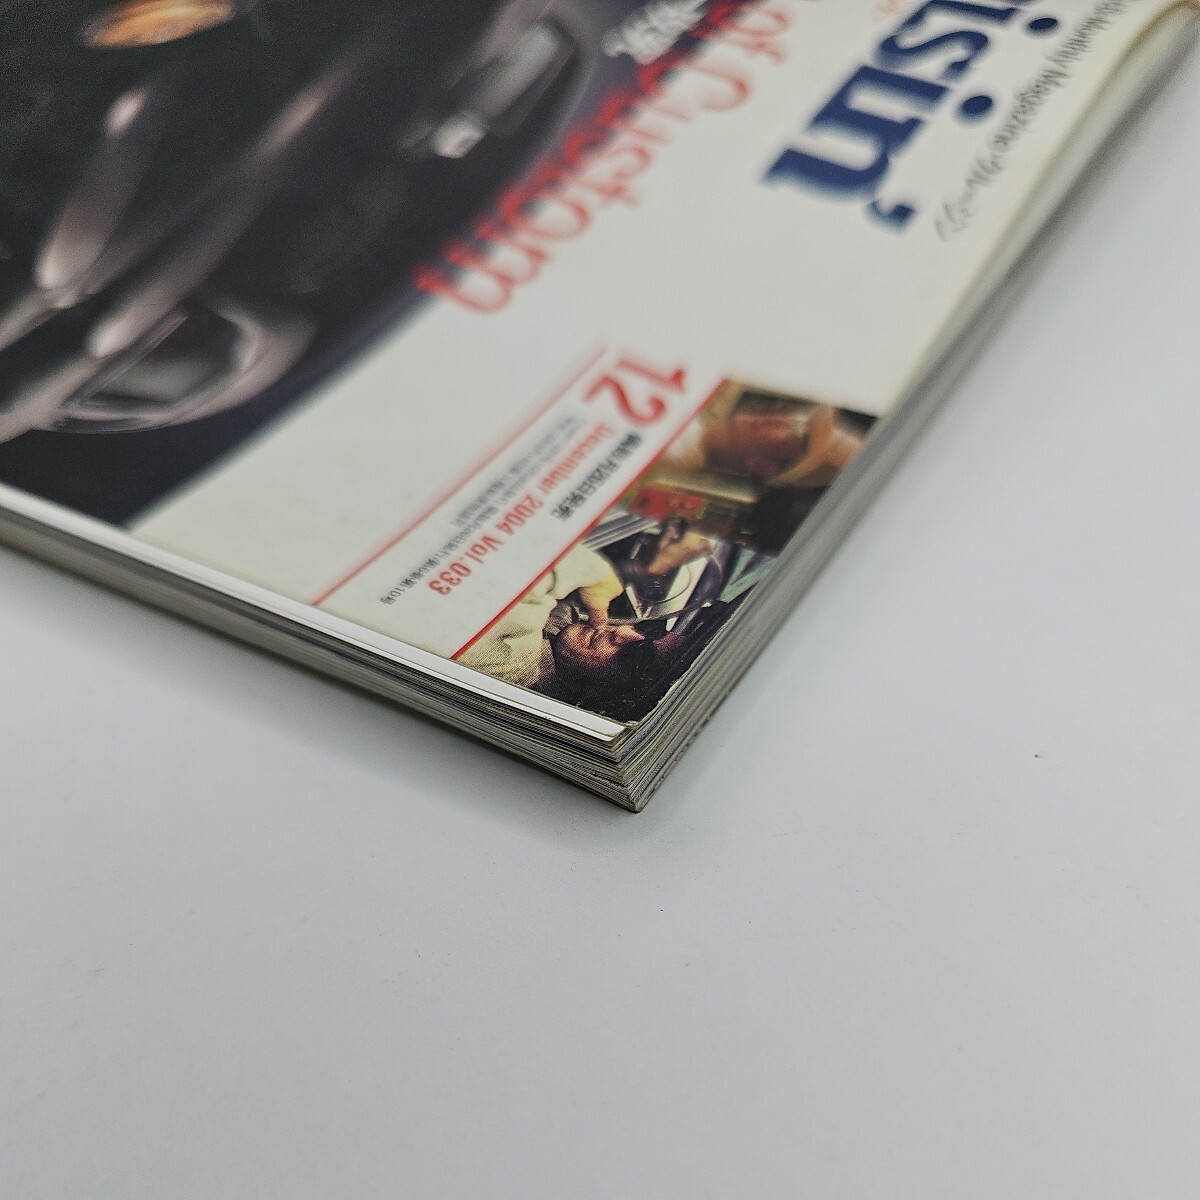 クルージング　Vol.33　2004年12月号　Cruisin　付録付き　アメ車　HOTROD　カスタムカー　クラッシックカー　ビンテージカー　レストア　